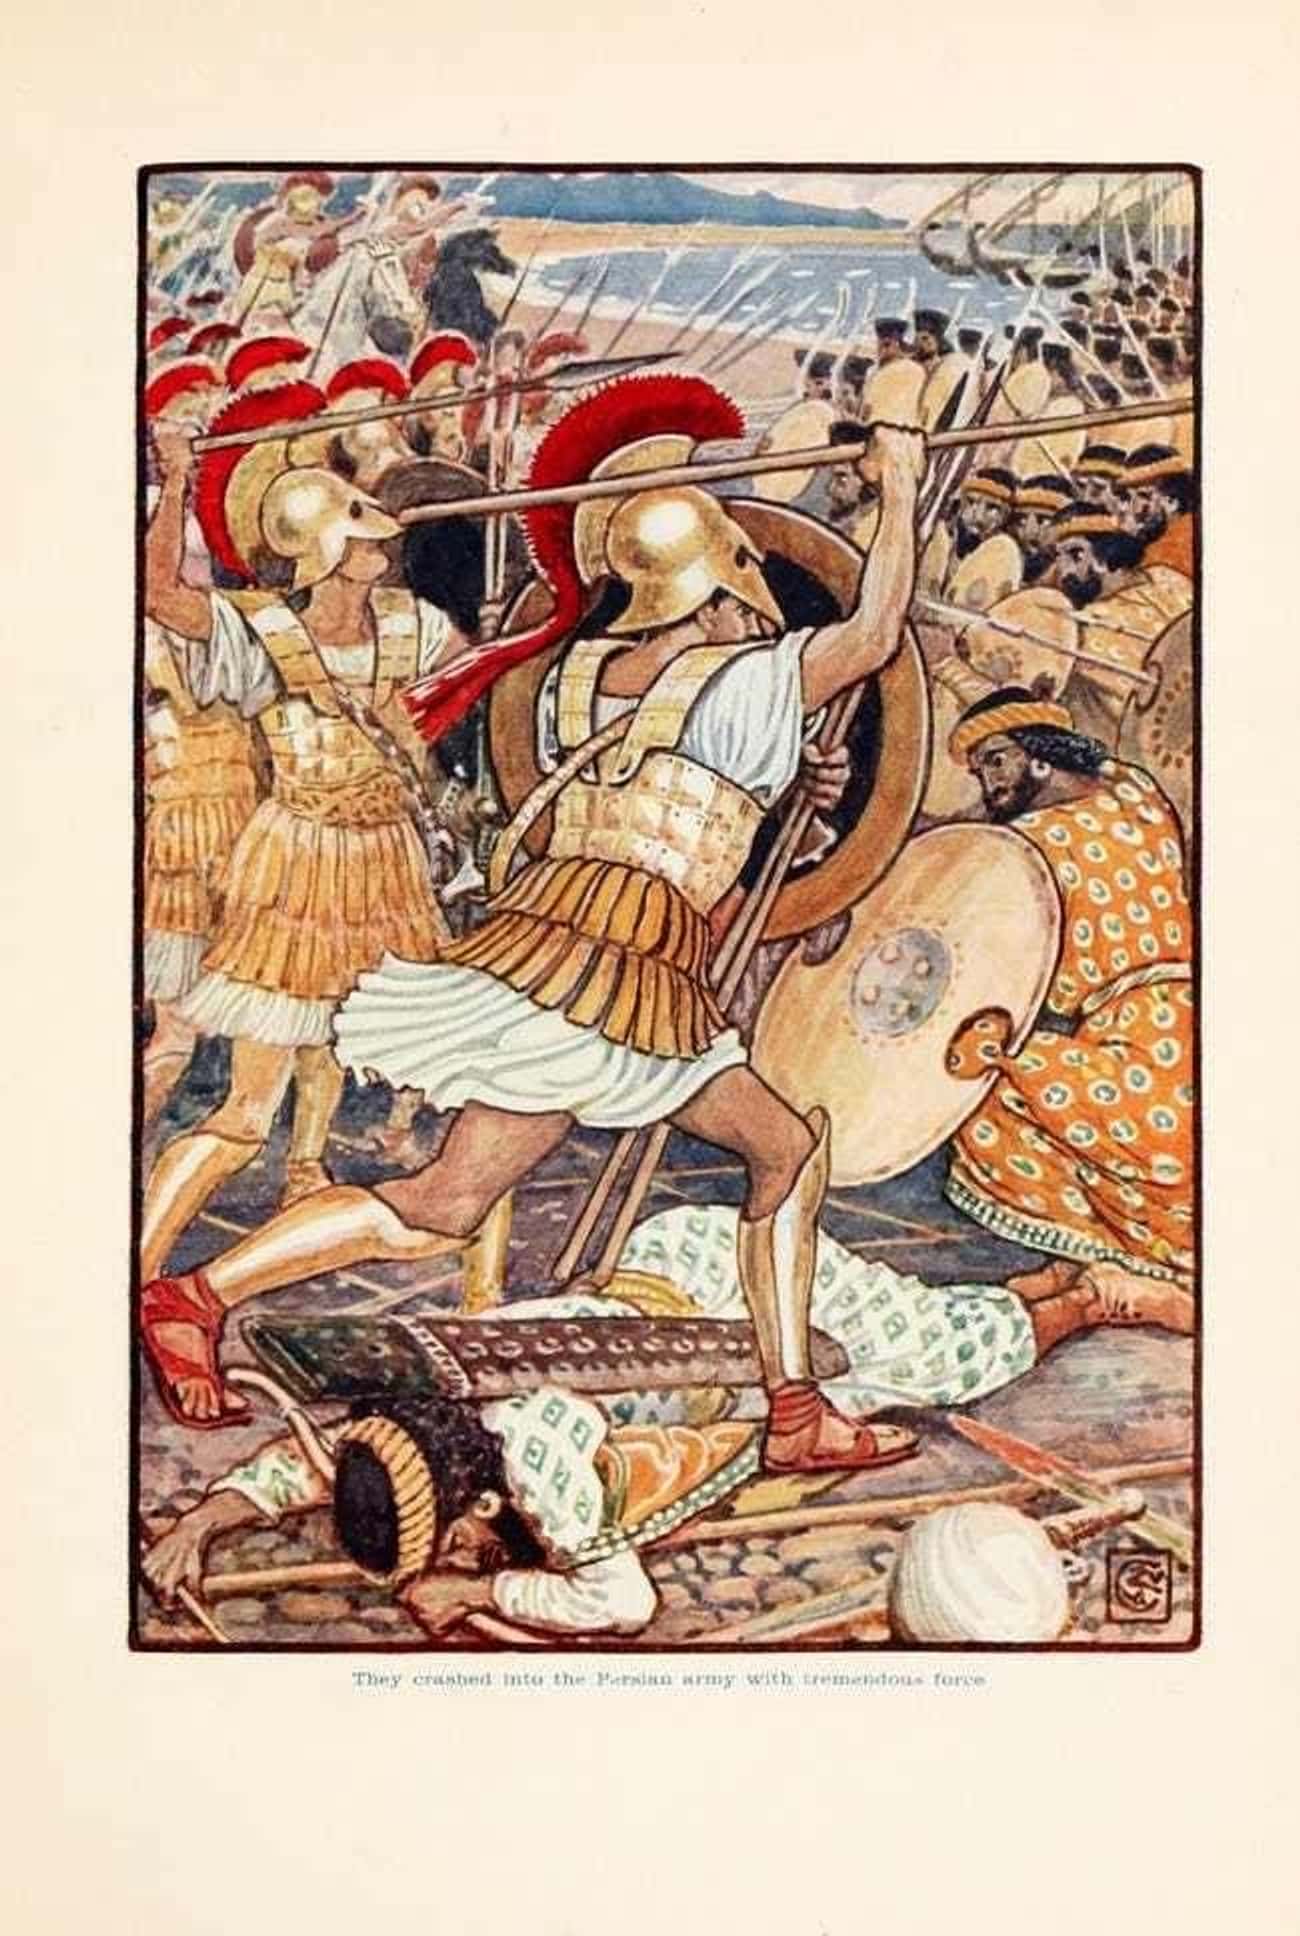 The Battle Of Marathon, The First Persian War, 490 BCE